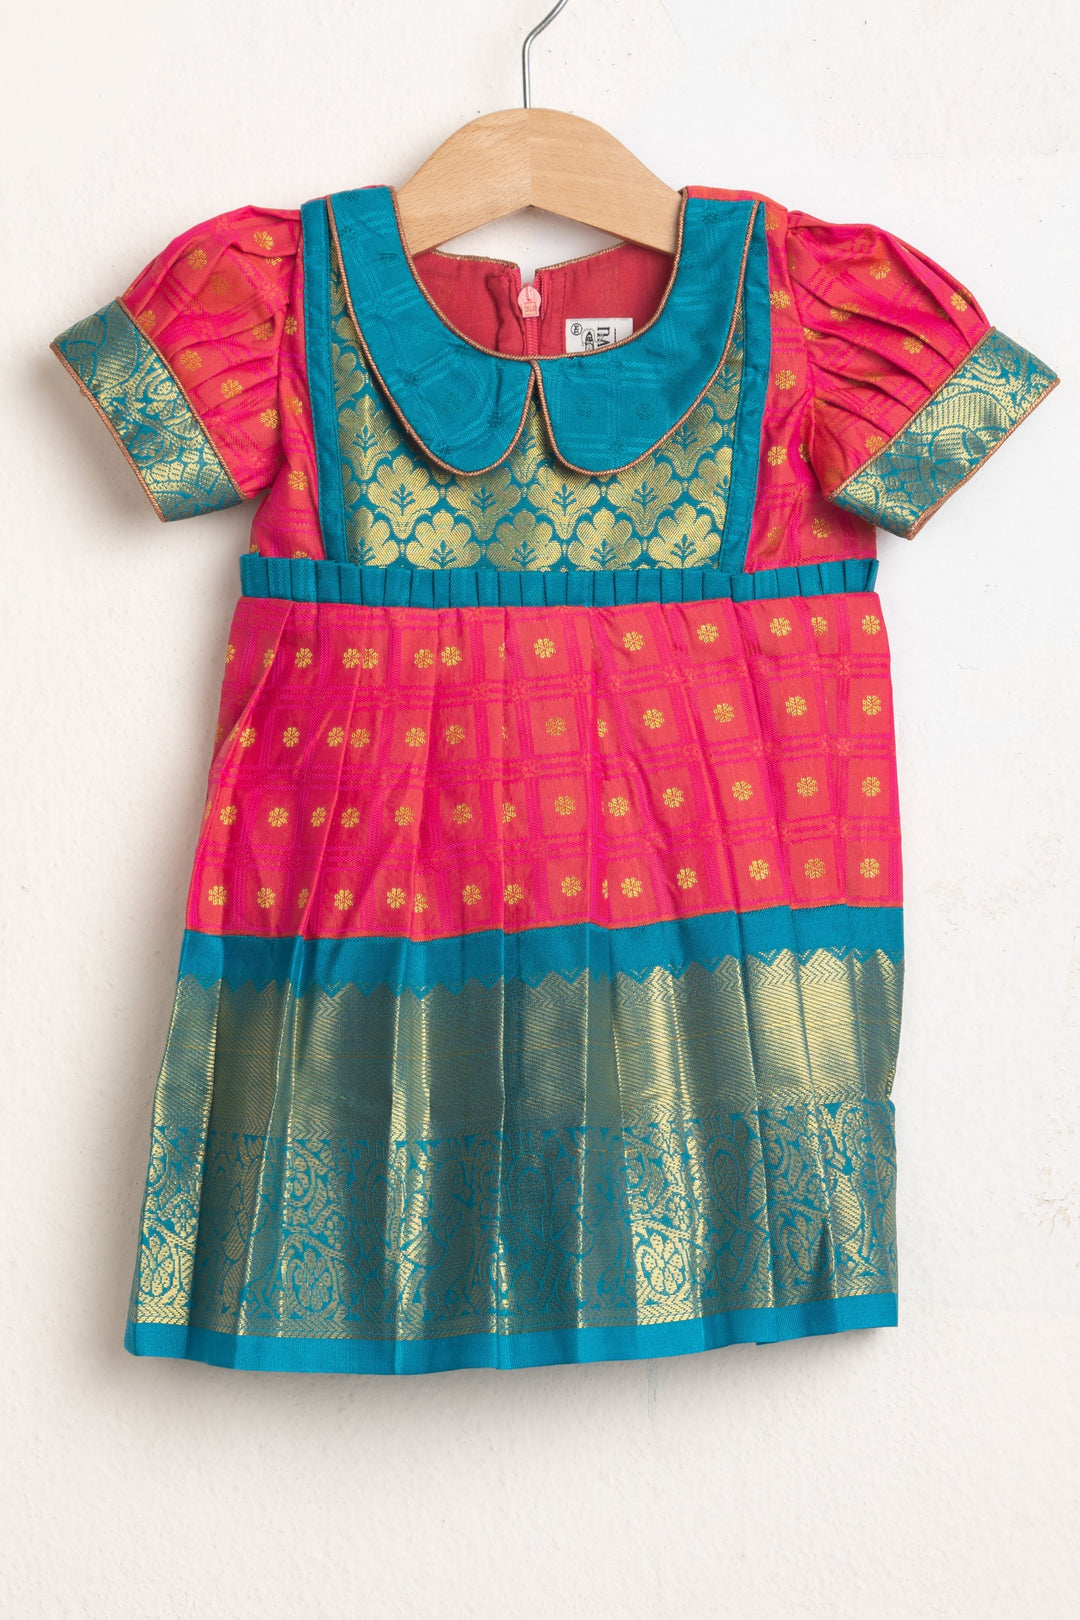 The Nesavu Girls Kanchi Silk Frock Fabric Embellished Blue Yoke And Butta Printed Pink Semi-Kanchi Pattu Frock Nesavu 14 (6M) / Pink / Kanchi Silk SF511A-14 Semi-Kanchi Silk Frocks For Girls| Best Collection| The Nesavu